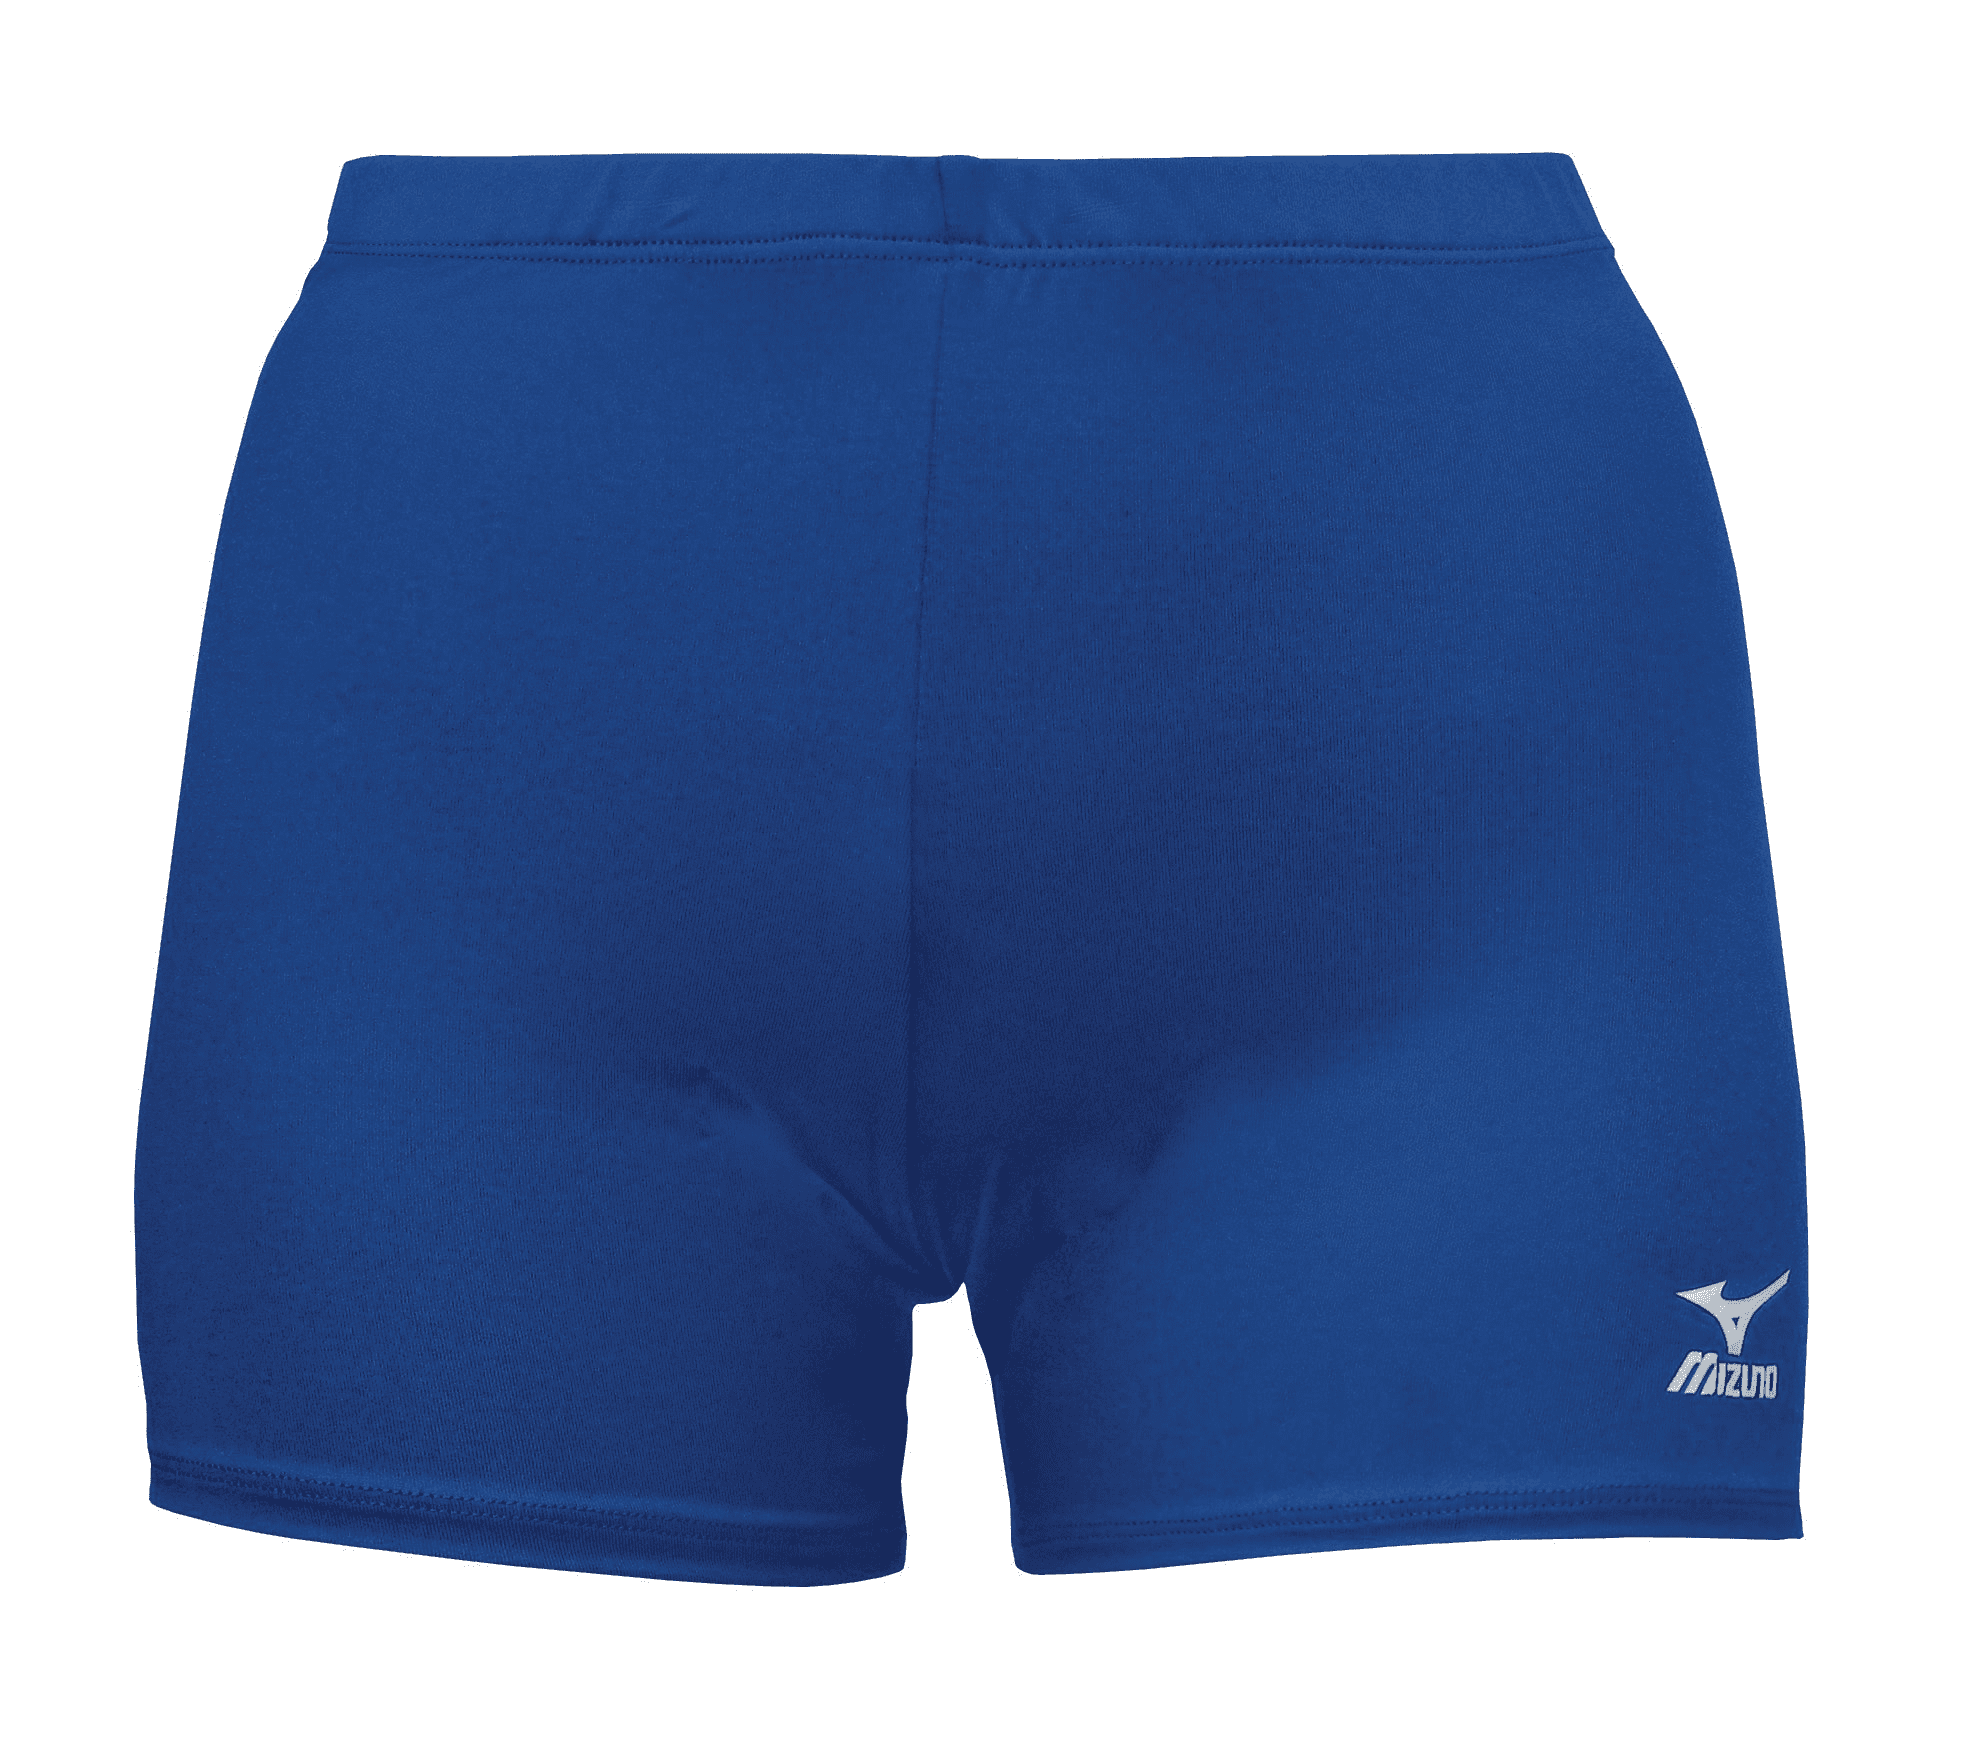 Mizuno Women's Vortex 4 Inseam Volleyball Shorts, Size Extra Large, Orange  (2020) 